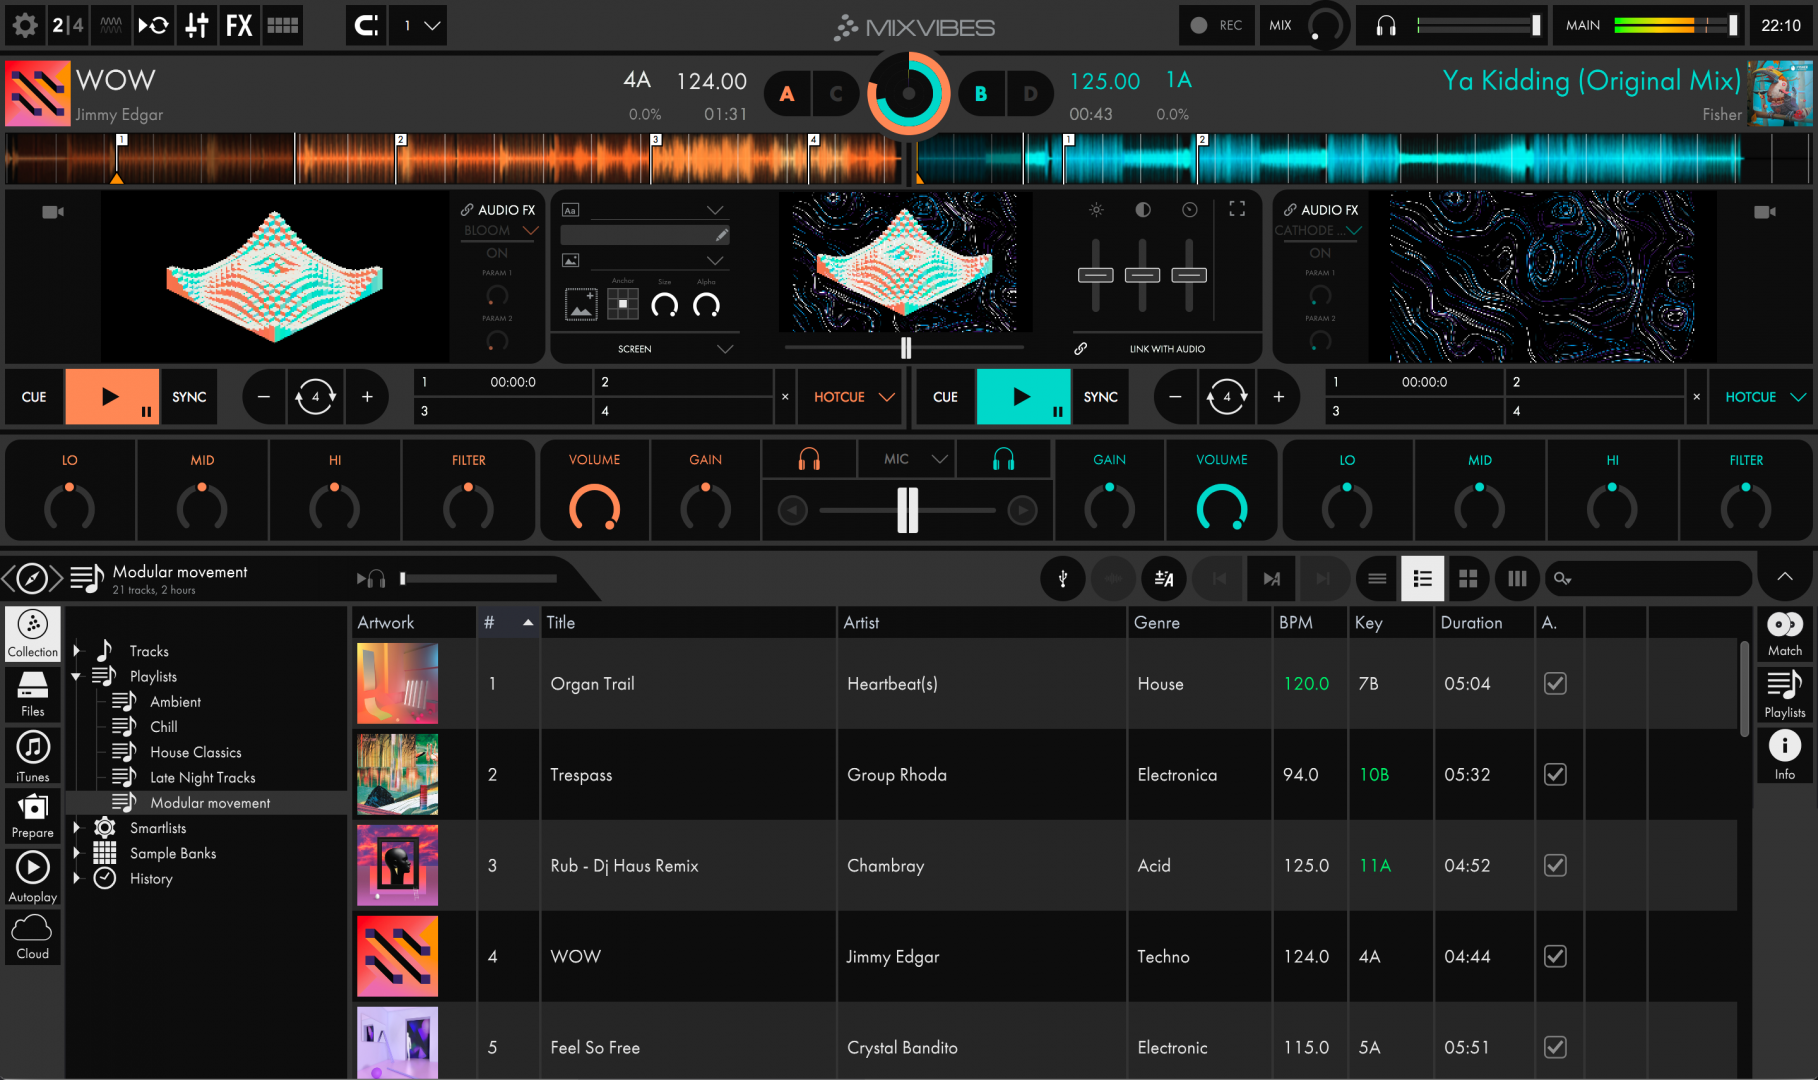 Mixvibes Cross DJ 4 Pro